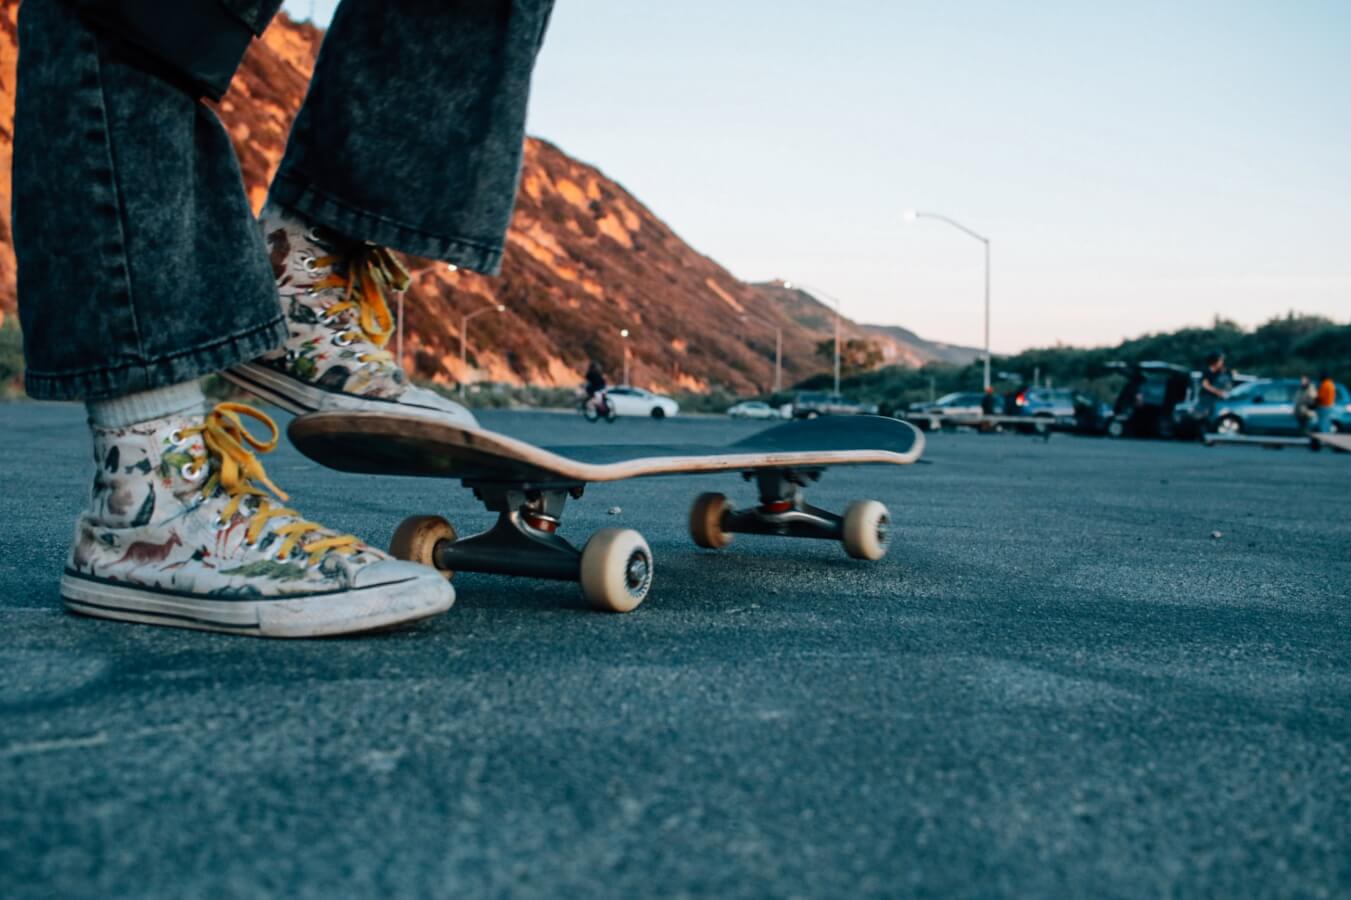 skateboarding in Ventura